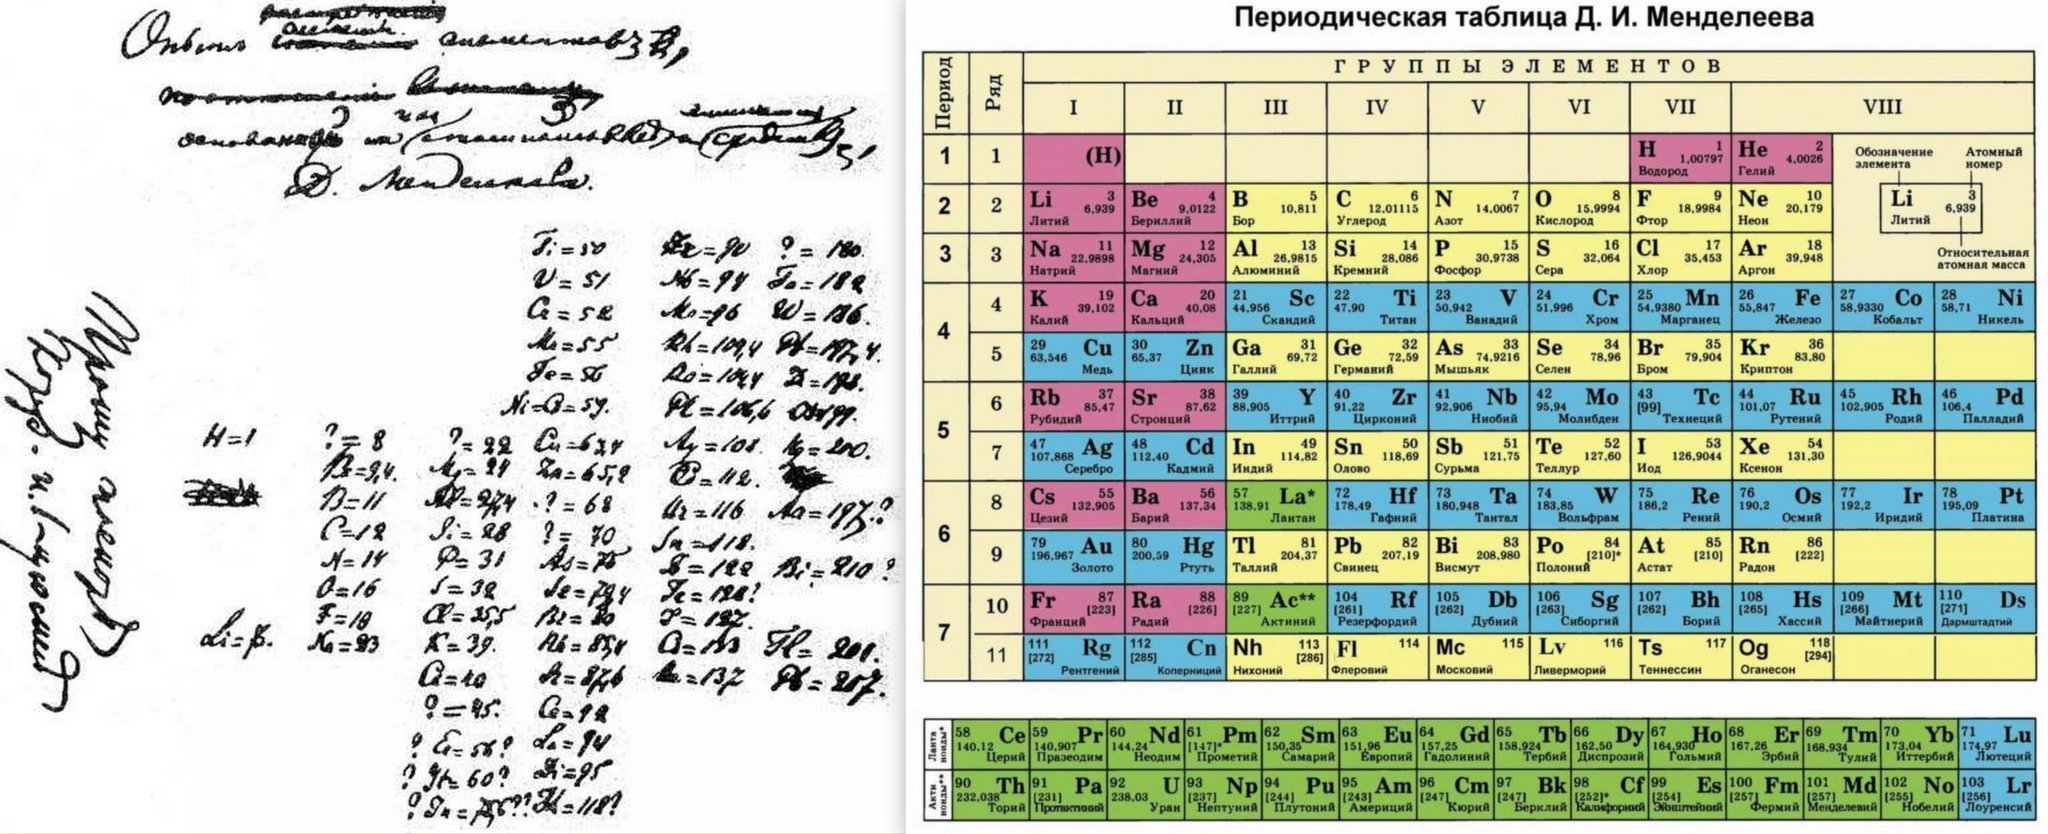 Сколько элементов известно. Периодическая система Менделеева 1869. Периодическая таблица Менделеева 1869. Первая таблица Менделеева 1869. Периодическая таблица Менделеева первоначальный вид.